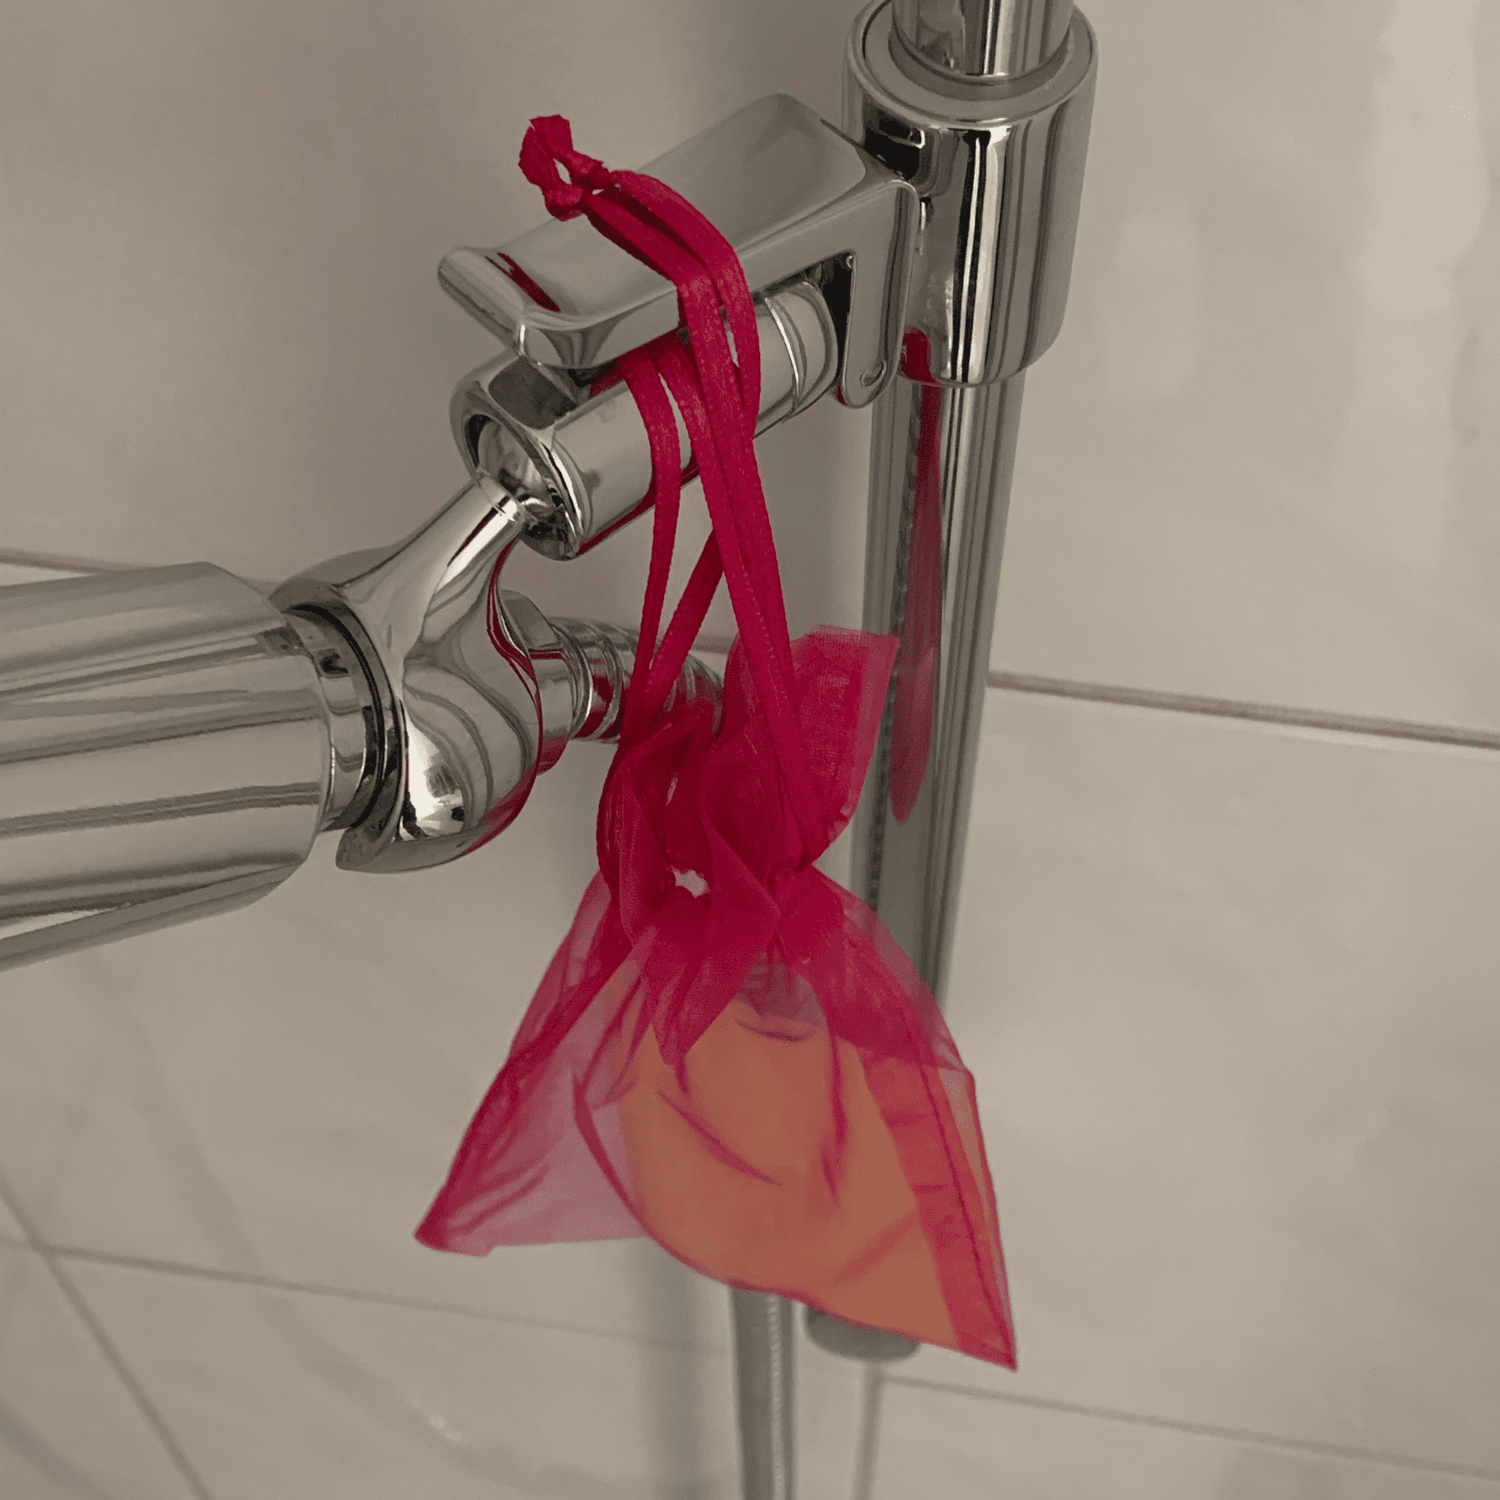 Seife in einem Organza-Säcklein zum Aufhängen in der Dusche